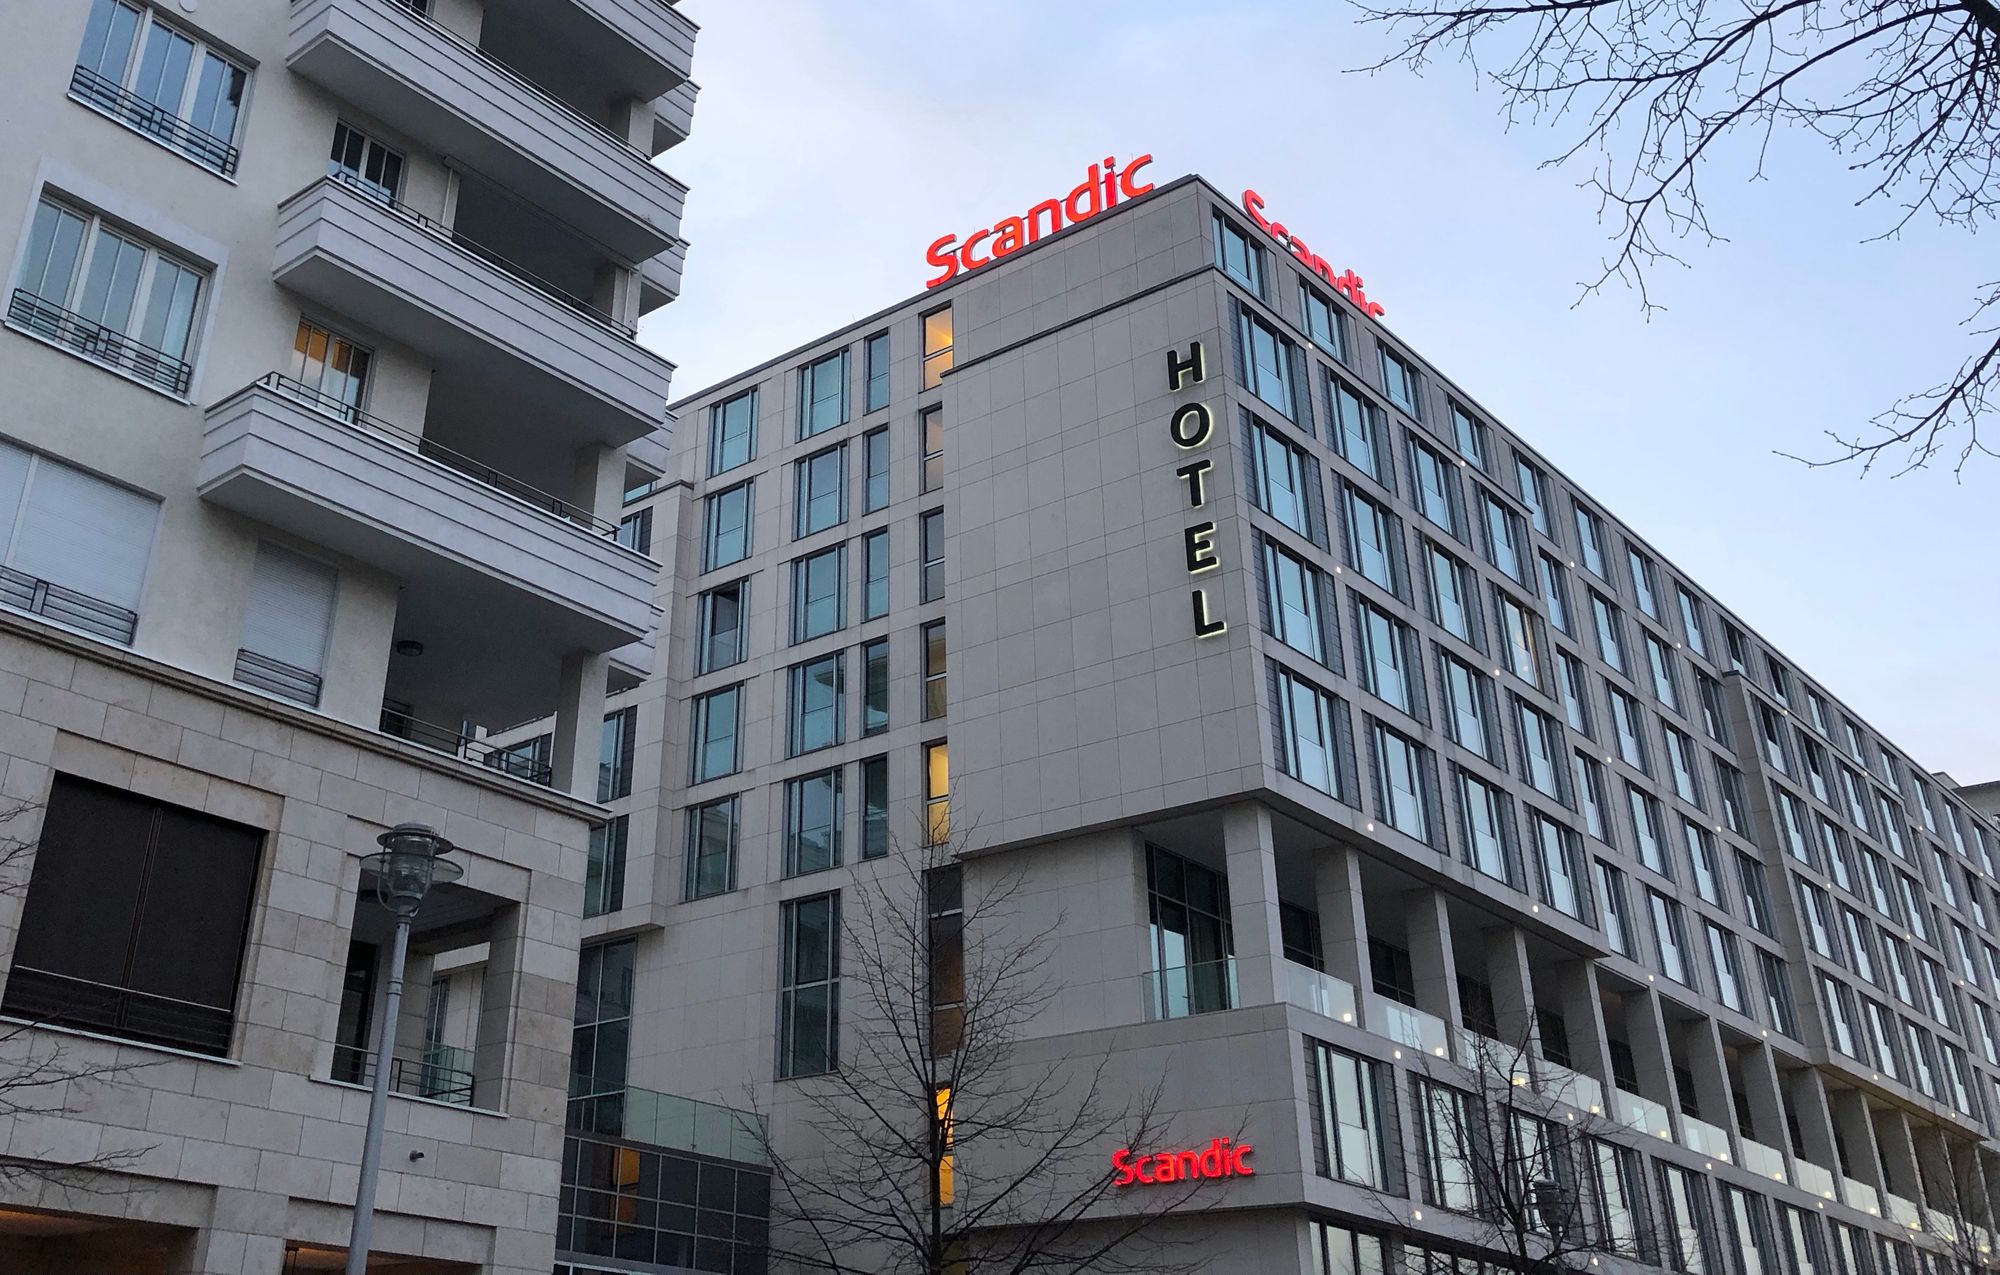 		Scandic Hotels ab 79€ buchen
	